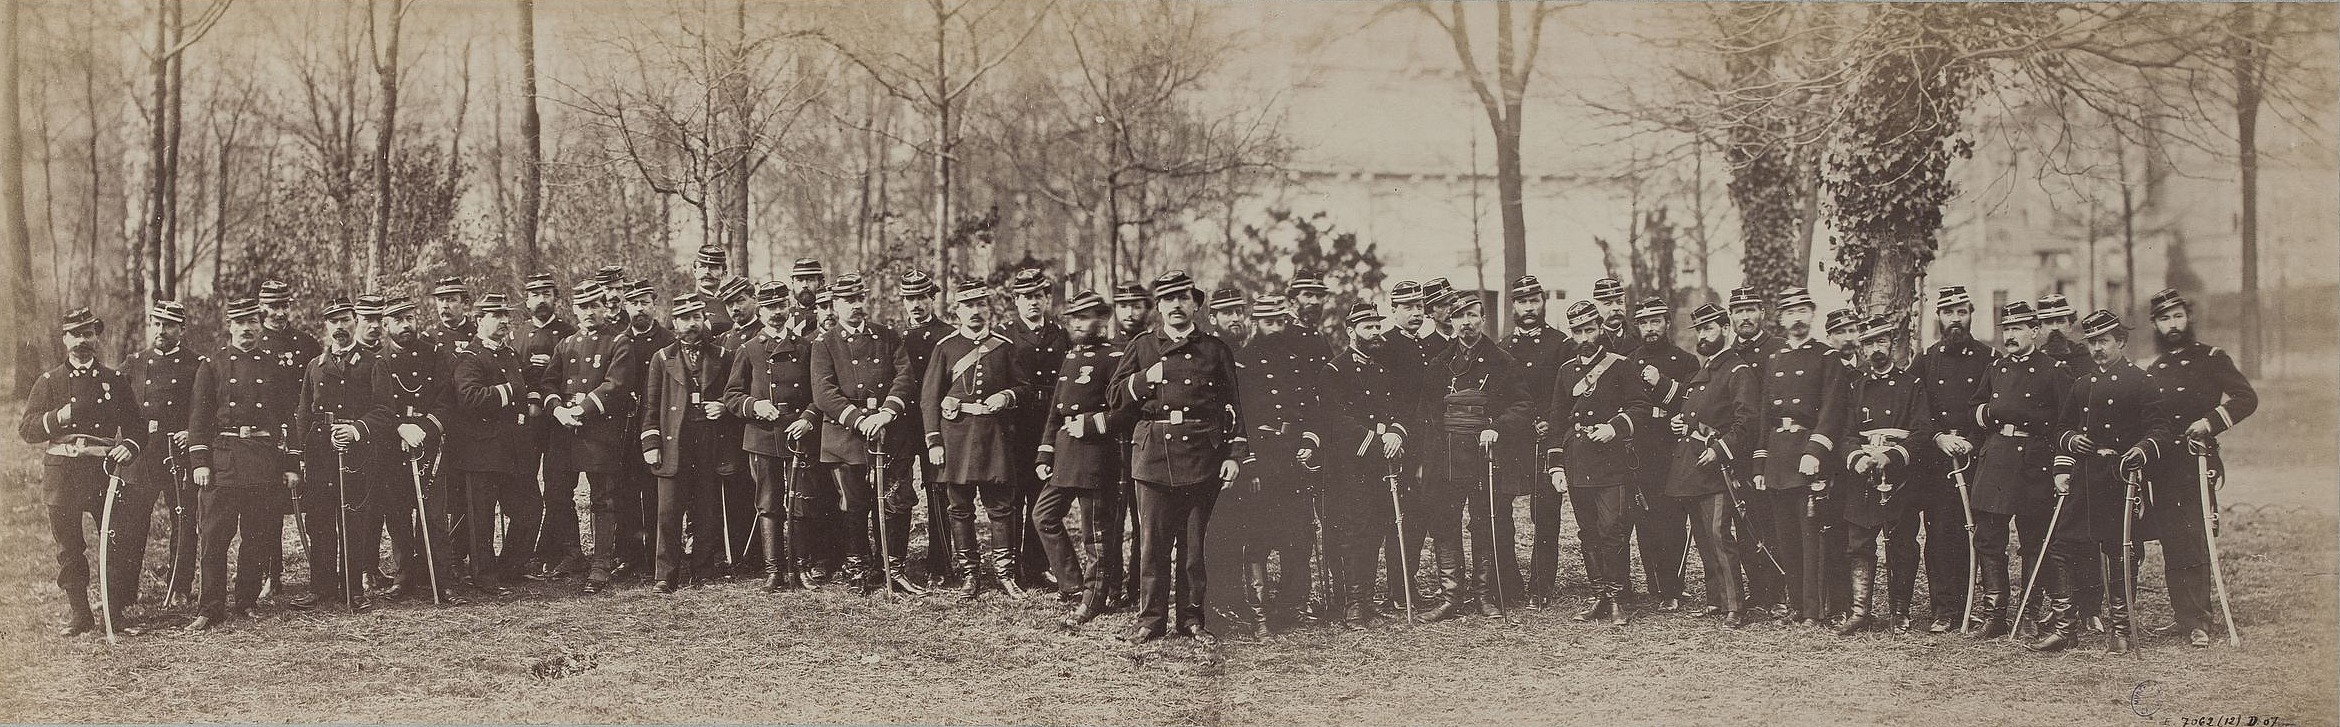 Défense de Paris 1870-1871 : Garde nationale 100e Bataillon, Commandant Poisson - Photographie André-Adolphe-Eugène Disdéri - 1871 (source : © Musée Carnavalet – Histoire de Paris)